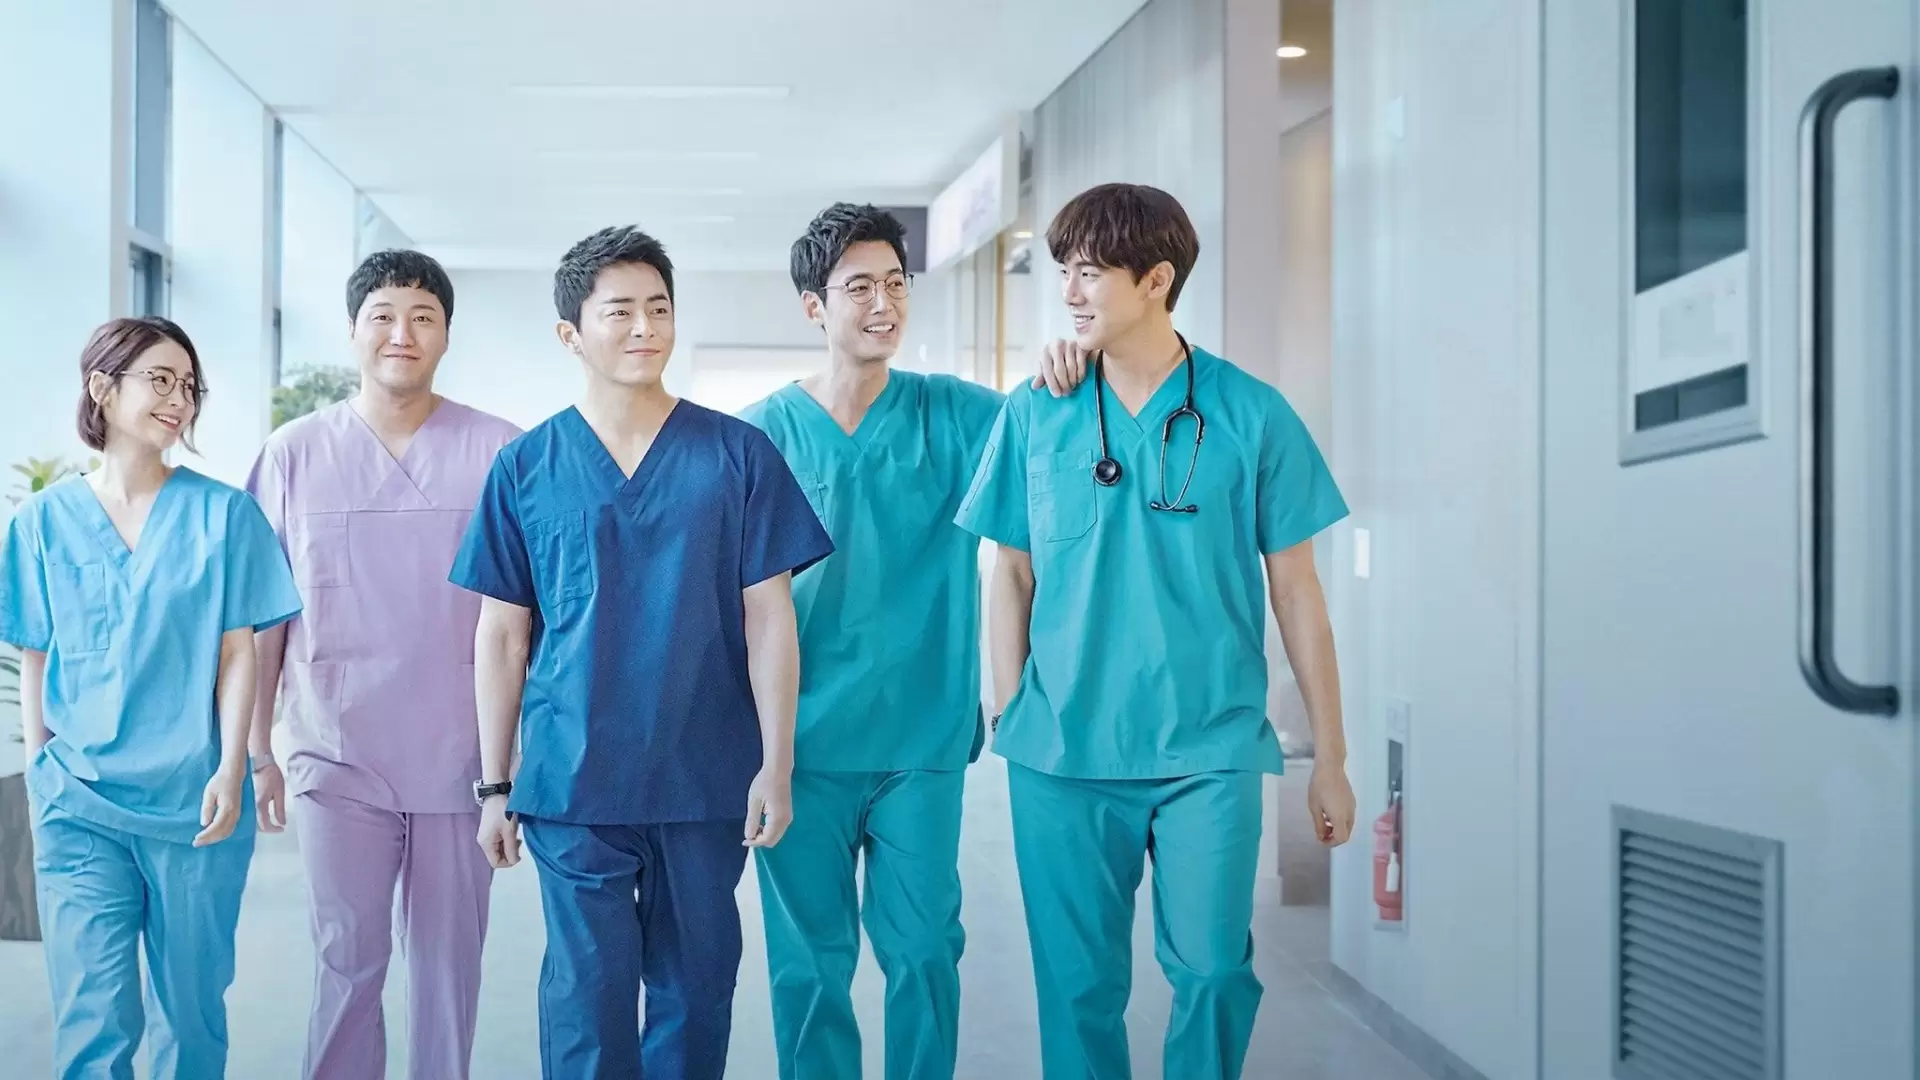 دانلود سریال Hospital Playlist 2020 (پلی لیست بیمارستان) با زیرنویس فارسی و تماشای آنلاین